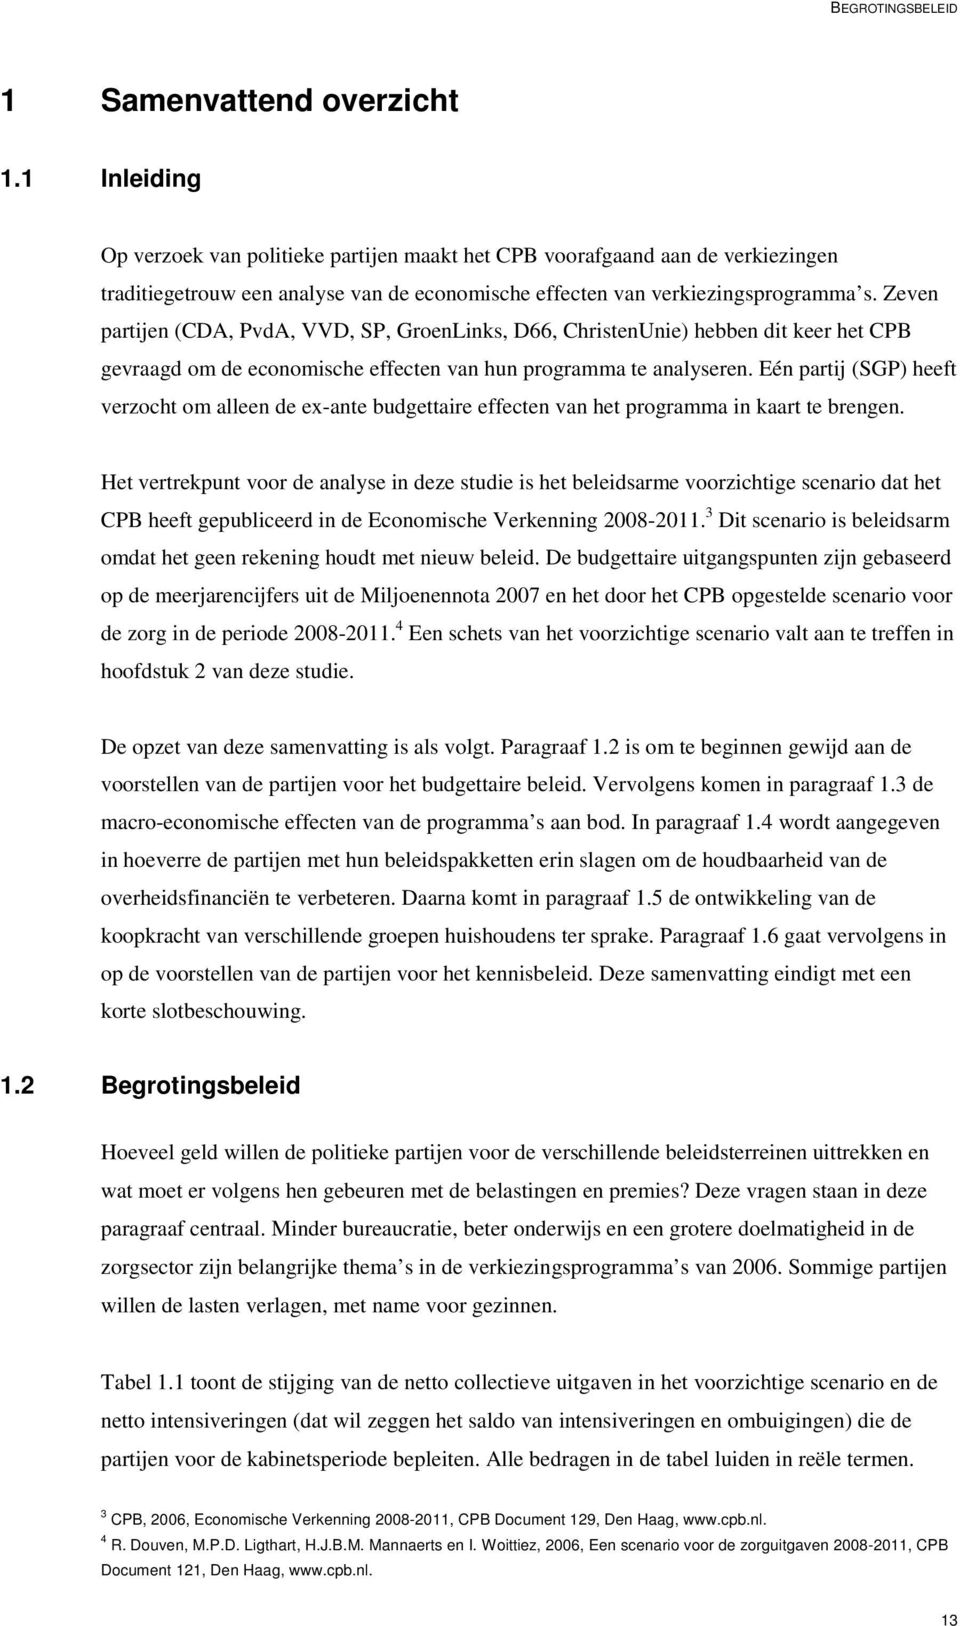 Zeven partijen (CDA, PvdA, VVD, SP, GroenLinks, D66, ChristenUnie) hebben dit keer het CPB gevraagd om de economische effecten van hun programma te analyseren.